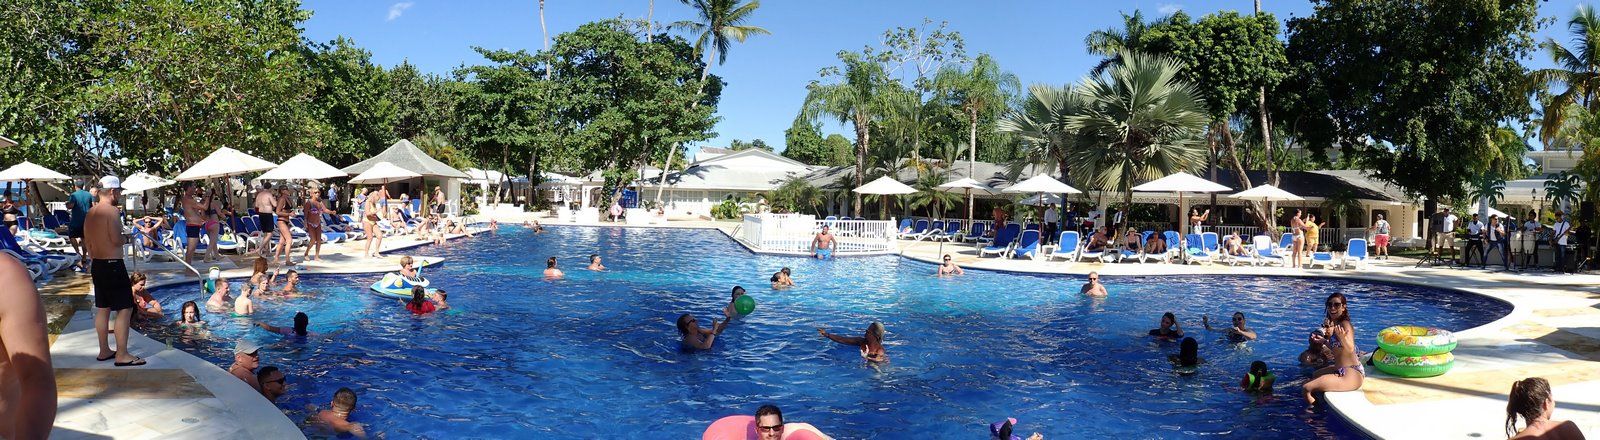 Samana Hotel piscina 002 (Copiar).jpg